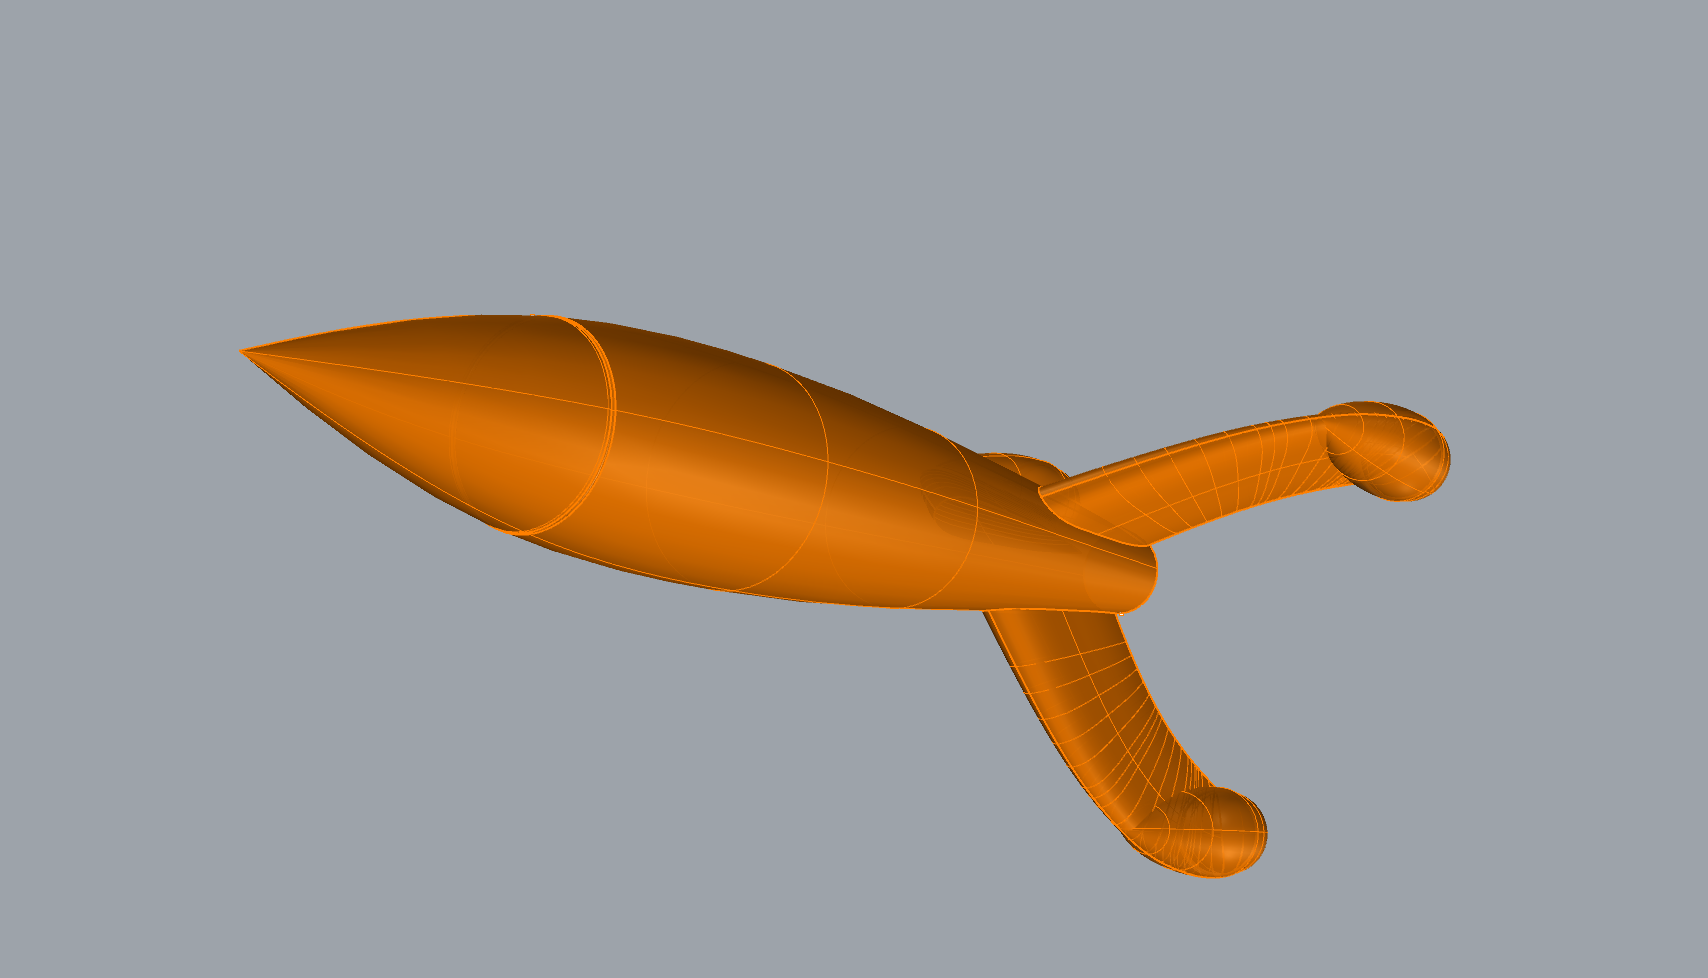 CAD-Modell einer Rakete, orange auf grauem Hintergrund.